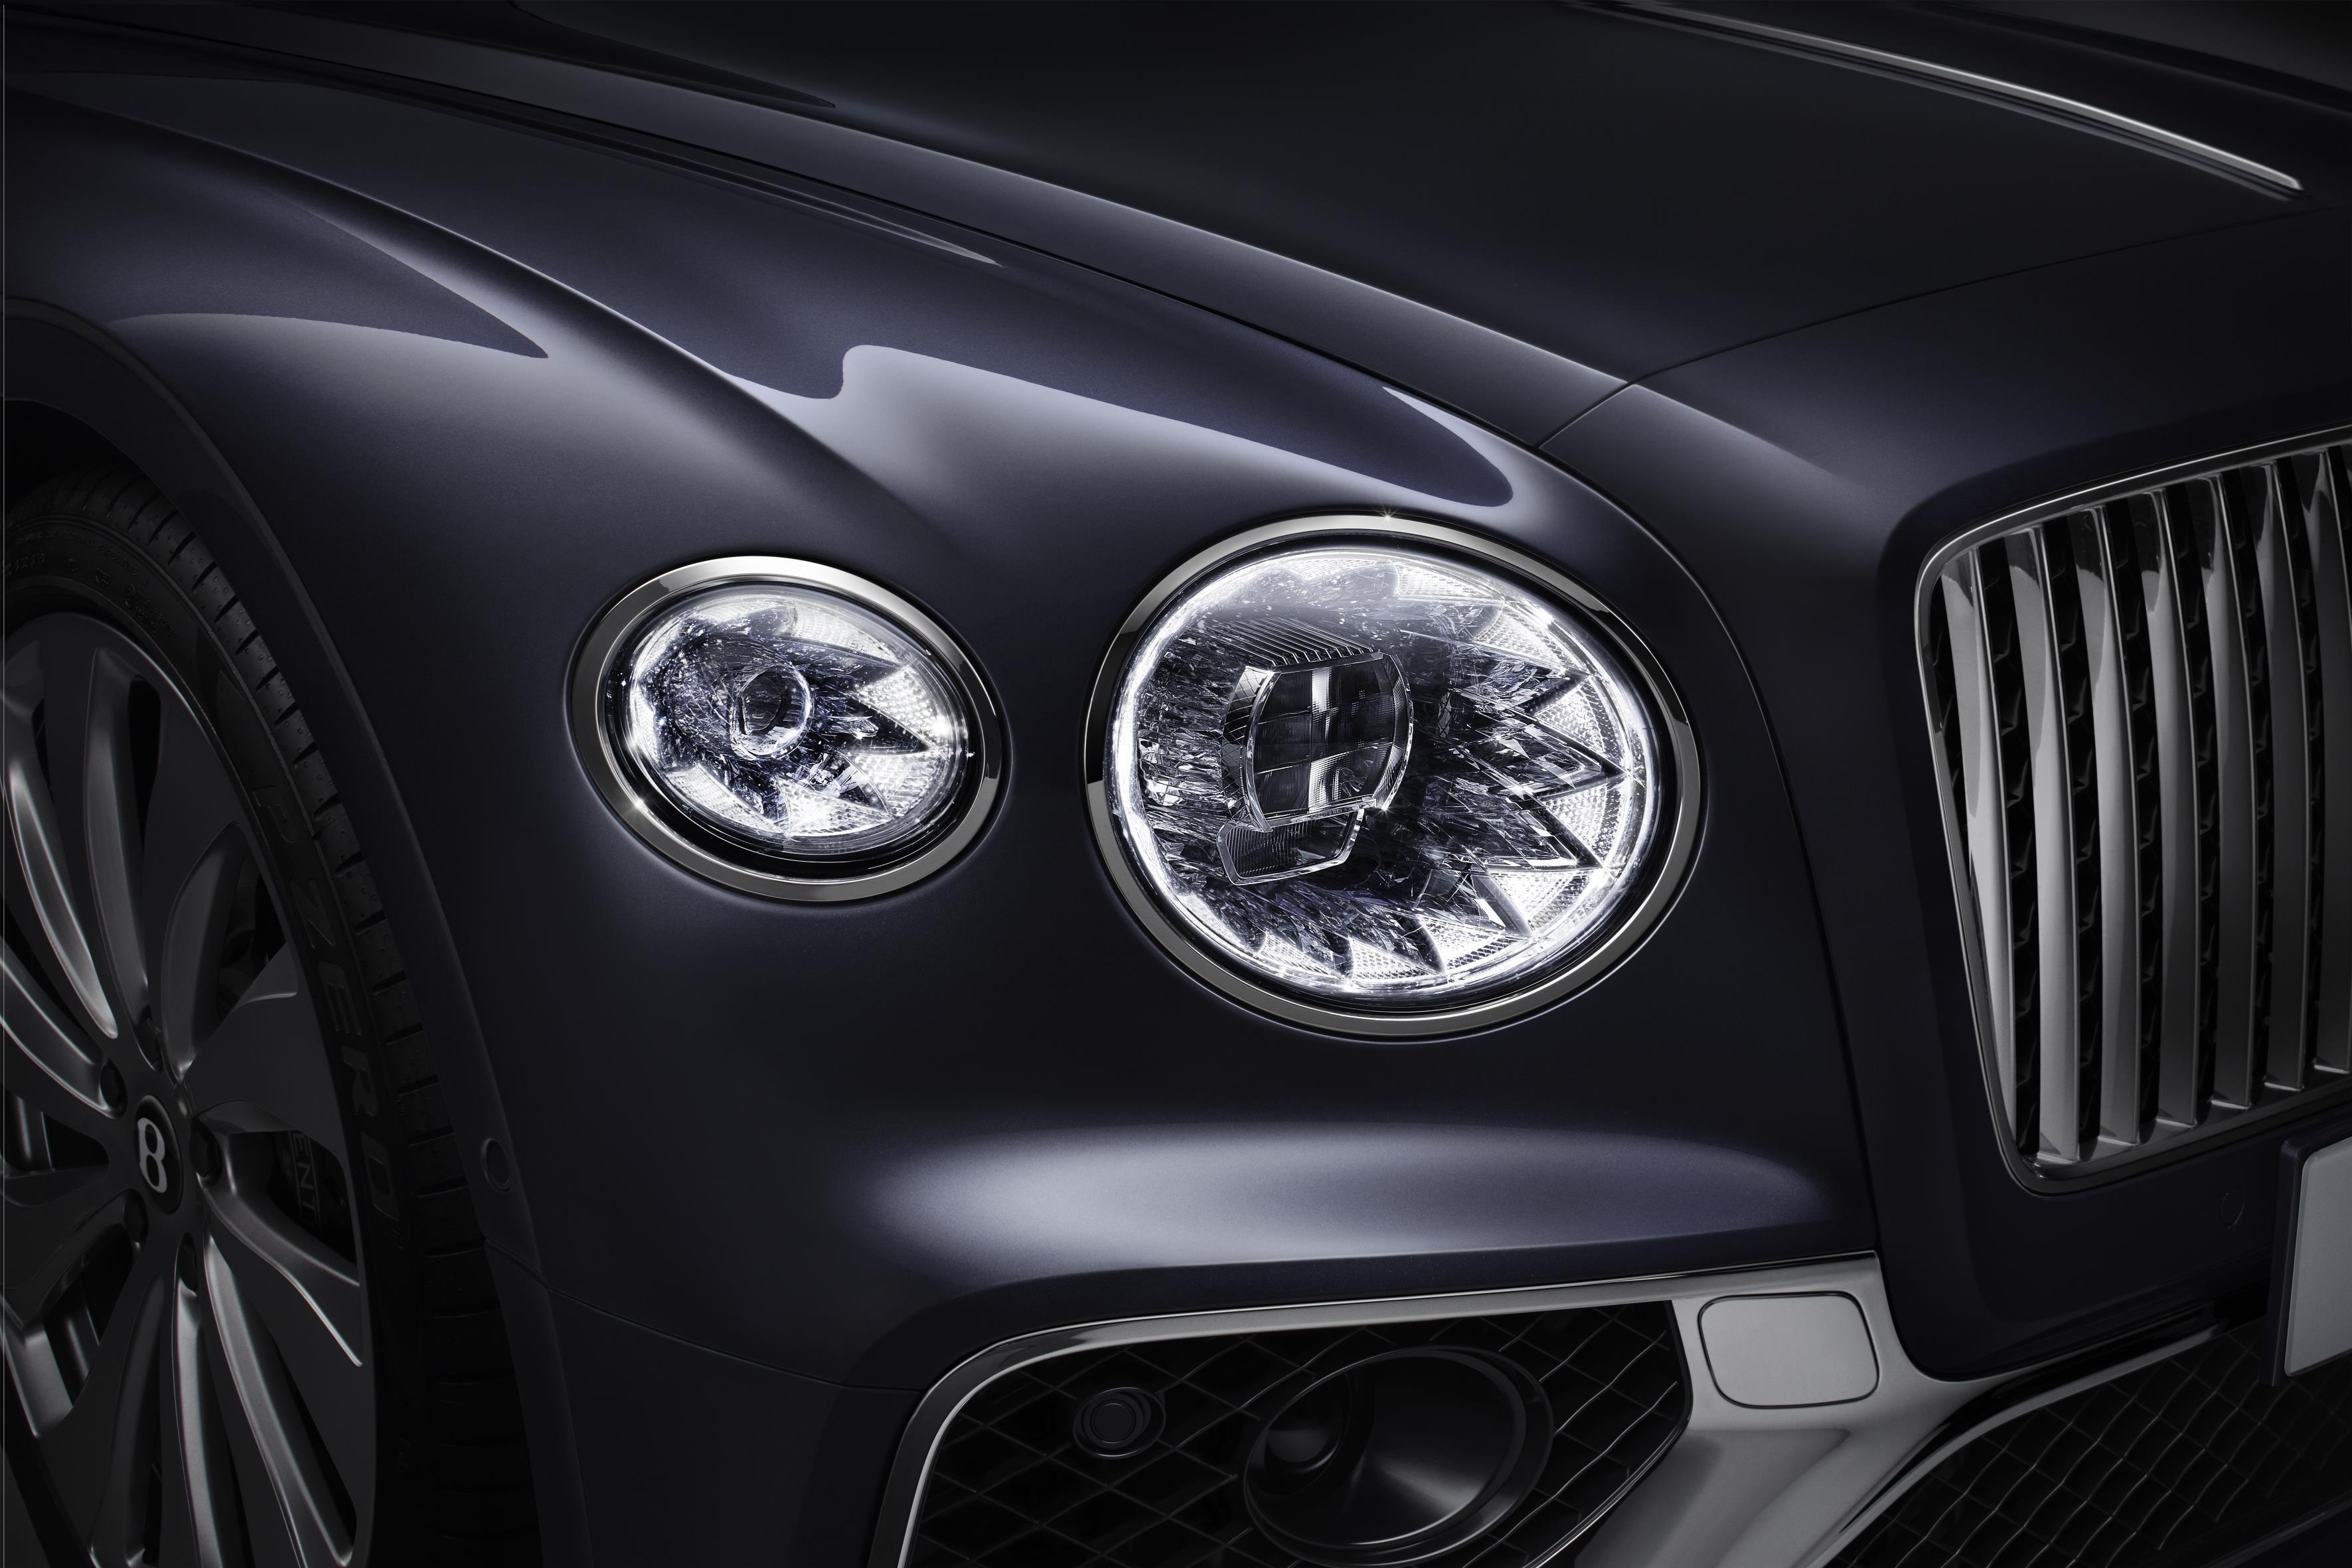 2020 Bentley Flying Spur Headlights